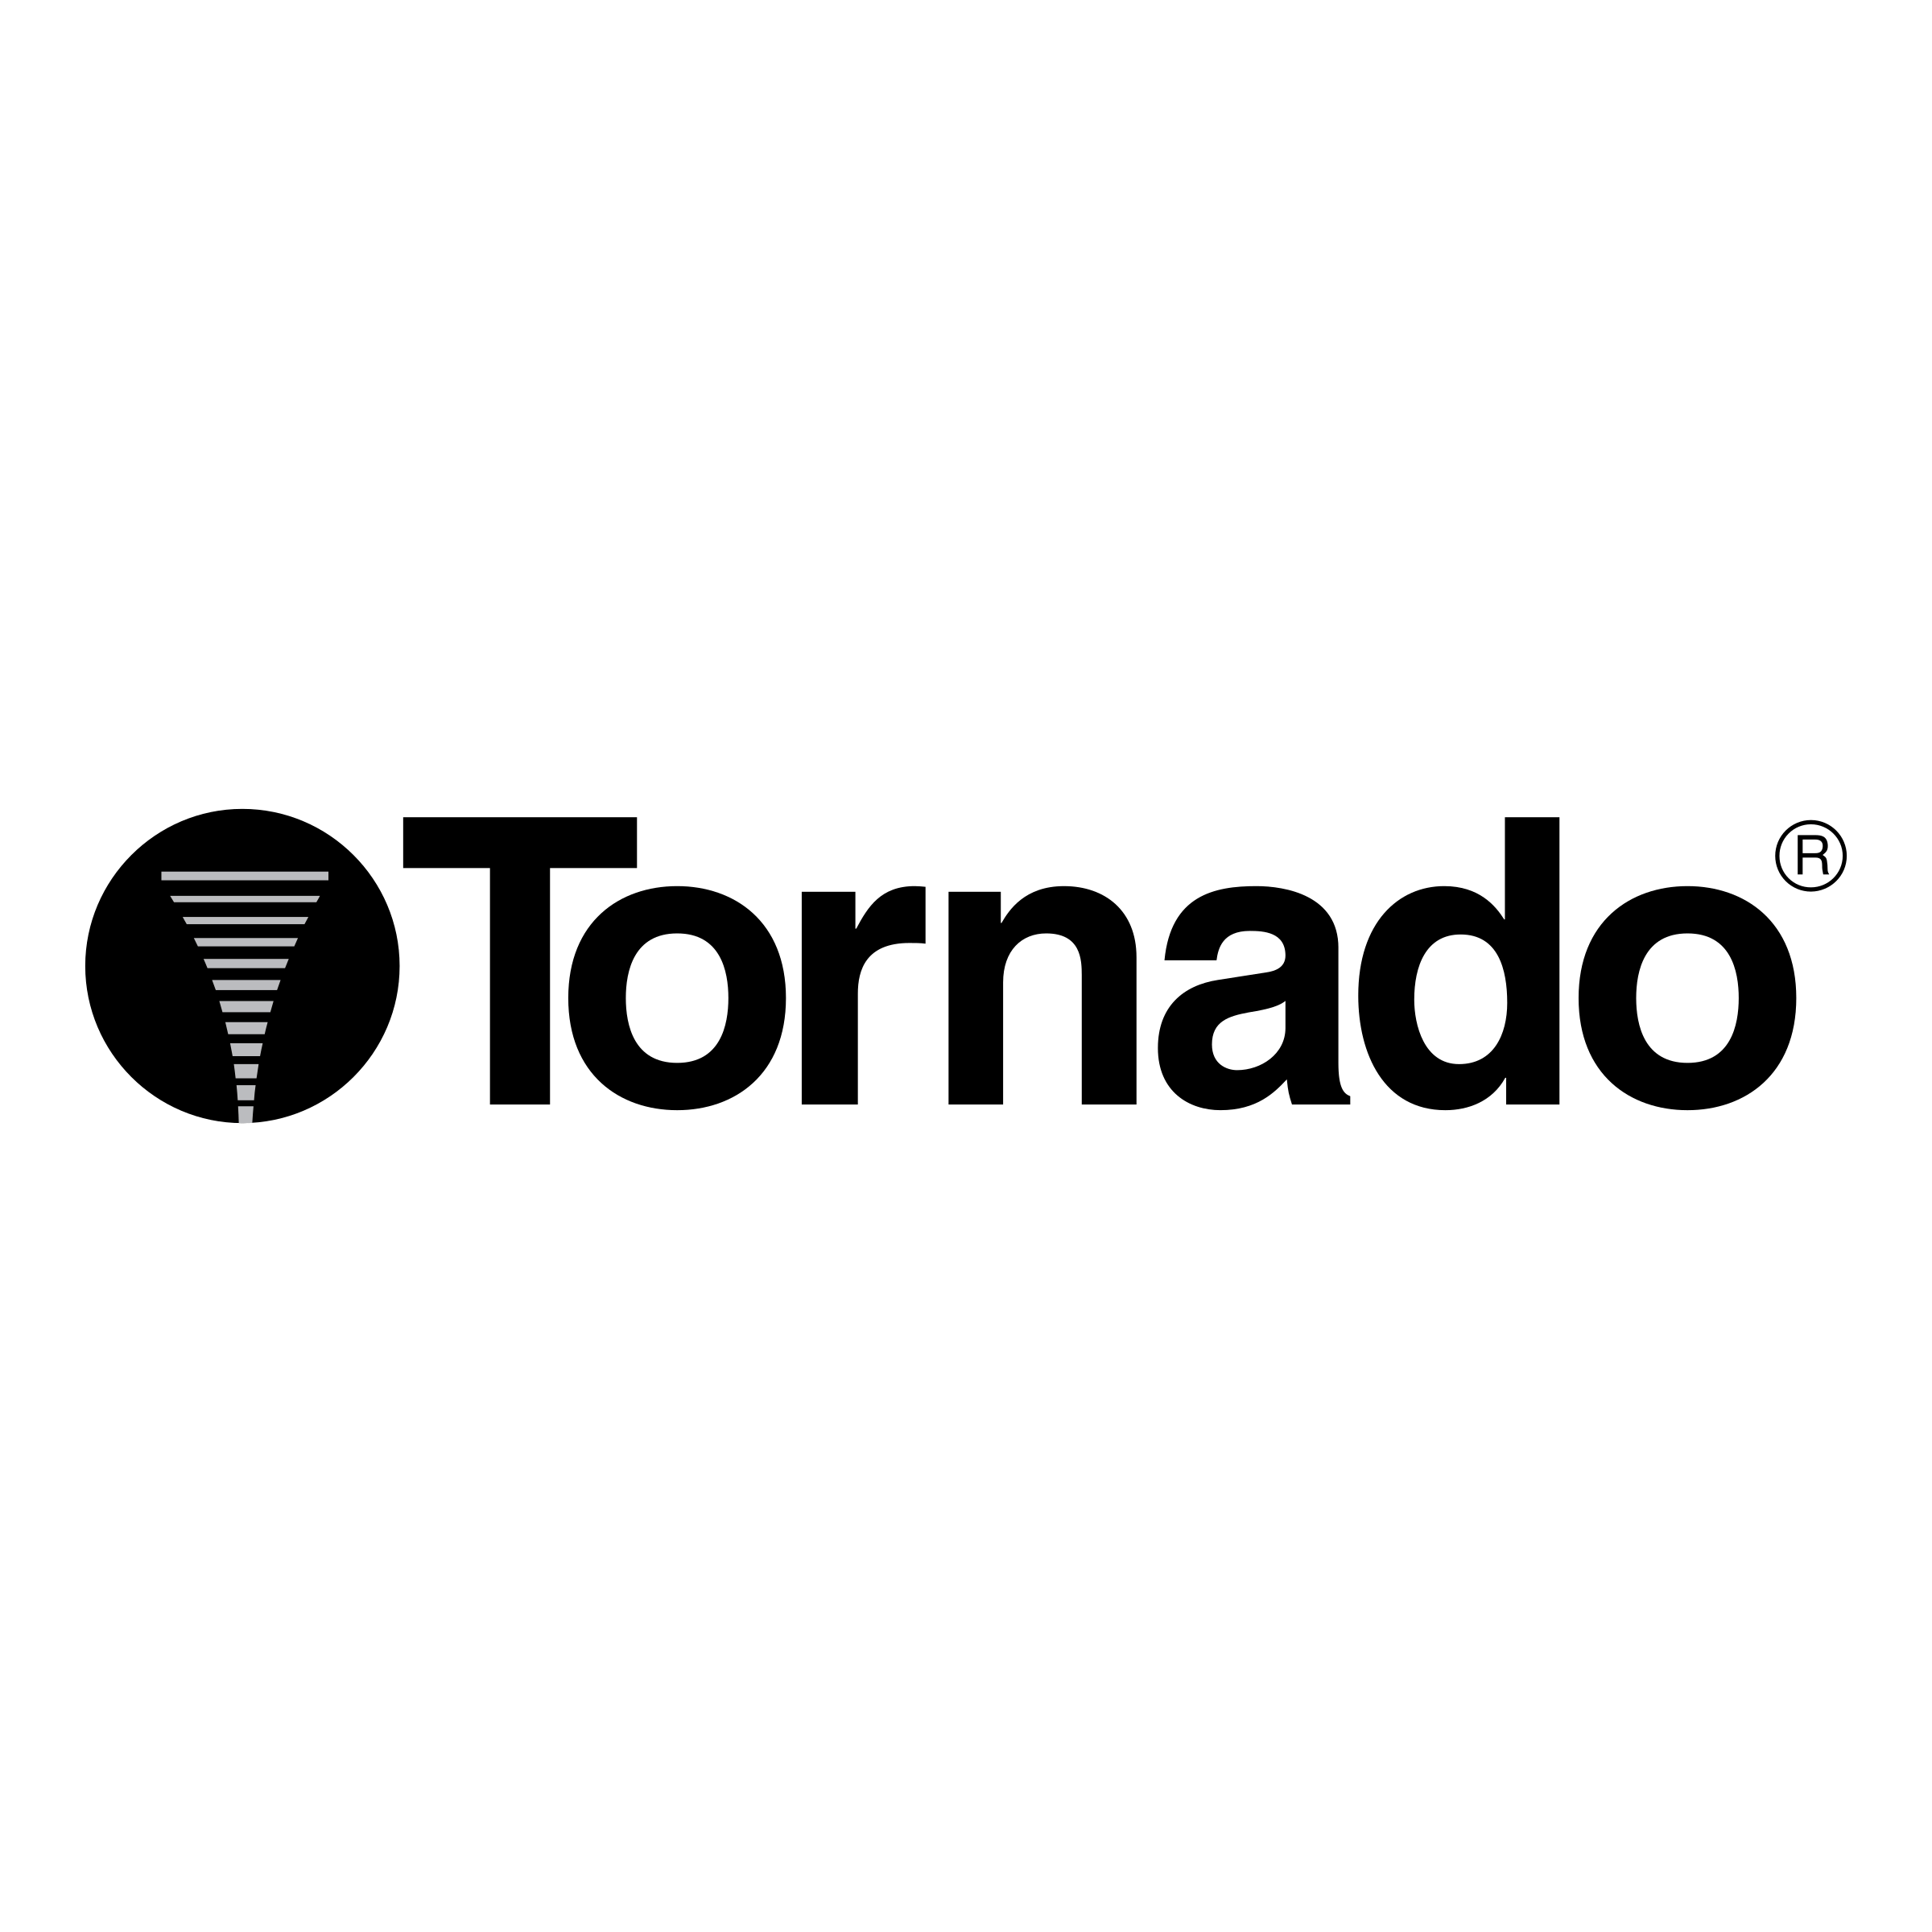 Tornado Logo - Tornado Logo PNG Transparent & SVG Vector - Freebie Supply